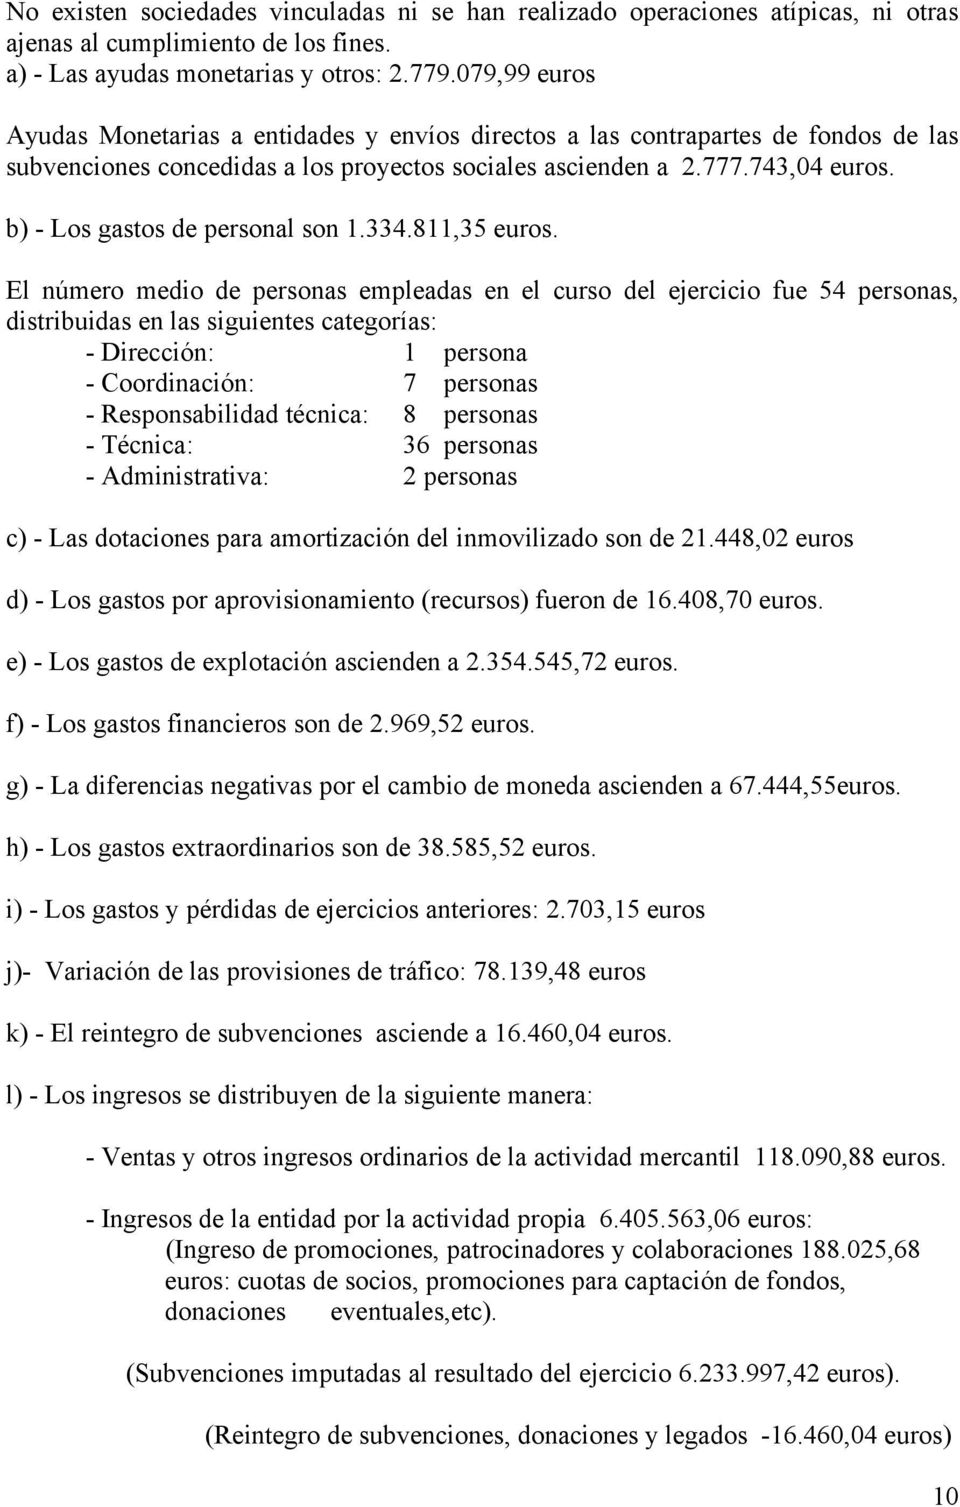 b) - Los gastos de personal son 1.334.811,35 euros.